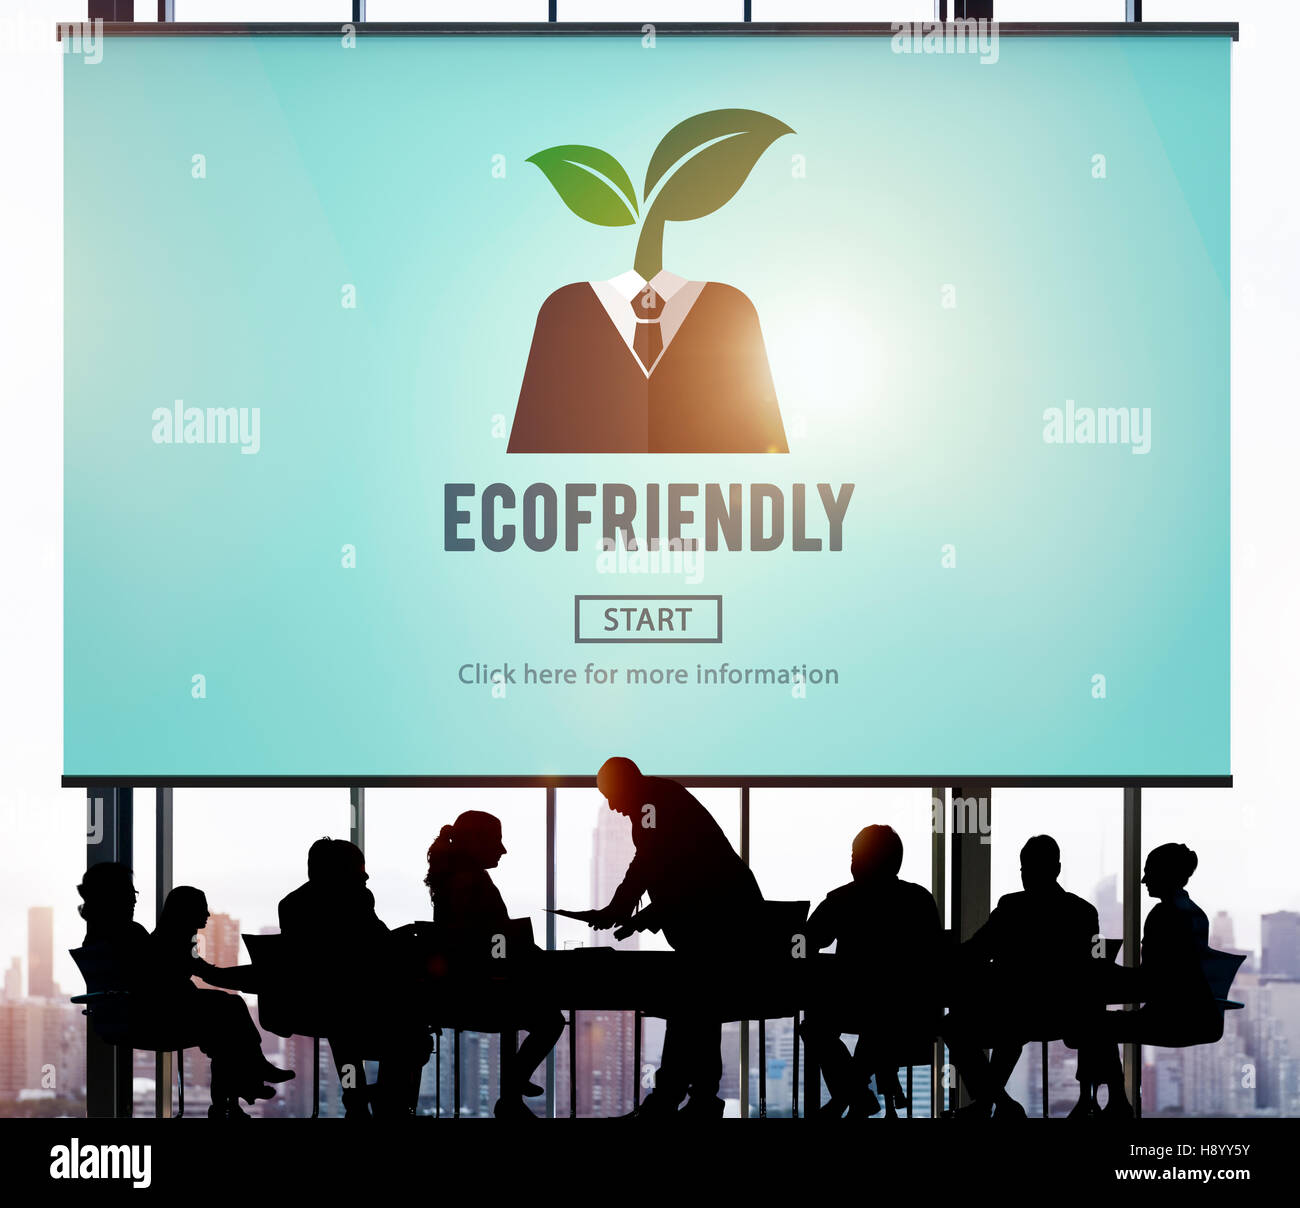 Ecofriendly Ecological Environmental Growing Concept Stock Photo